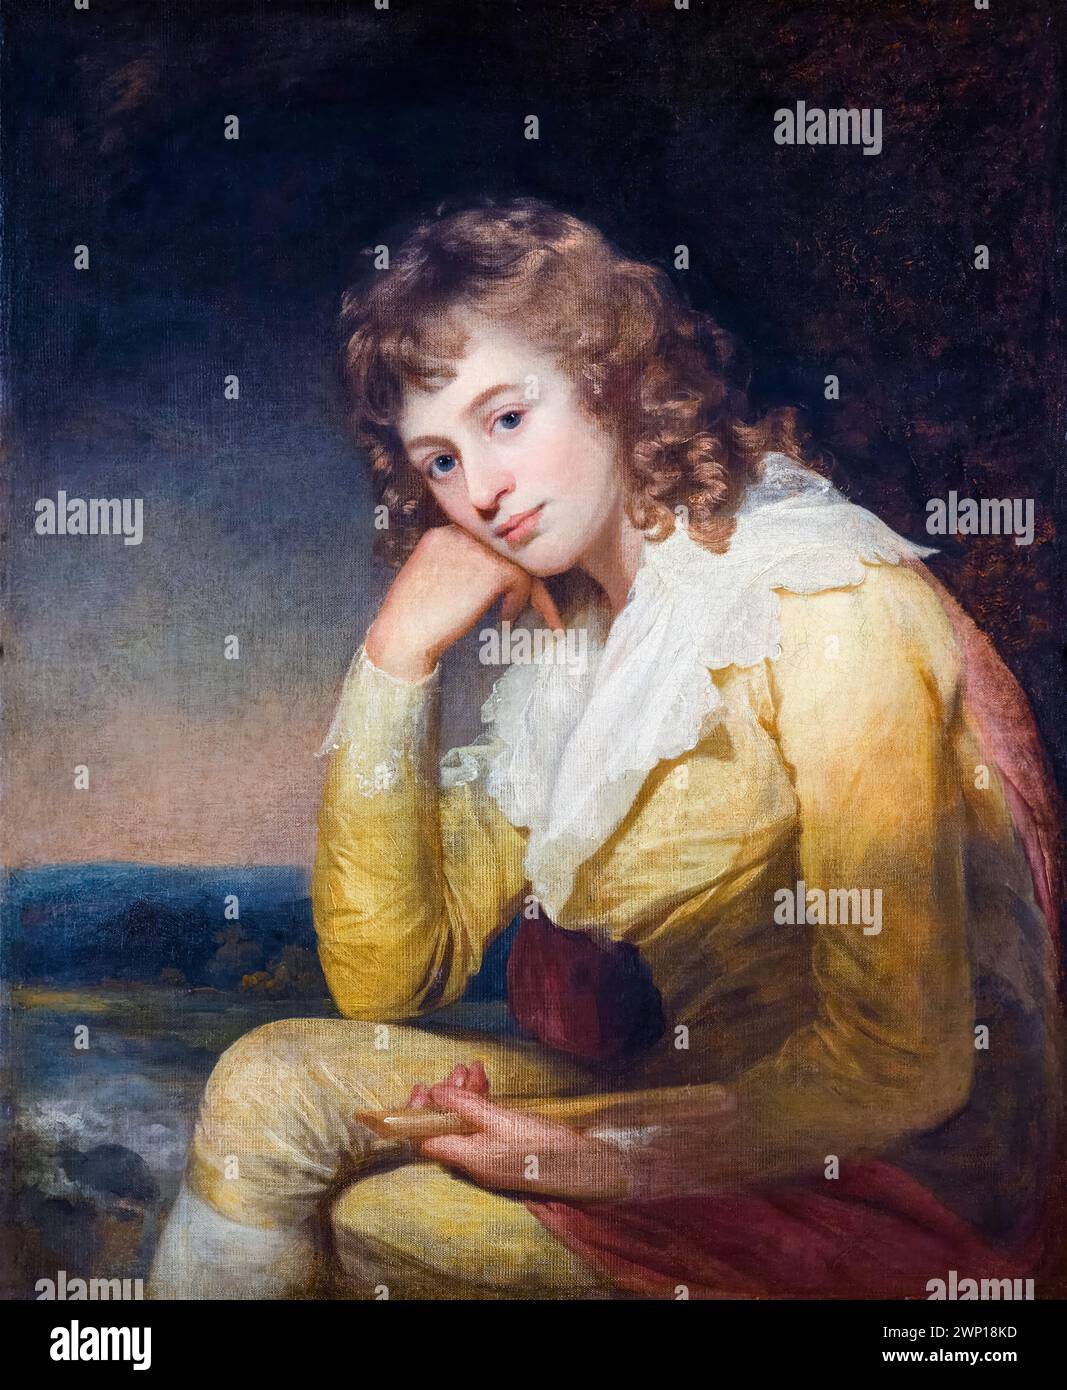 Dorothea Jordan (geb. Bland, 1761–1816) anglo-irische Schauspielerin, langjährige Geliebte von Prinz William, Herzog von Clarence (später König Wilhelm IV.). Porträtgemälde in Öl auf Leinwand von Sir William Beechey, um 1787 Stockfoto